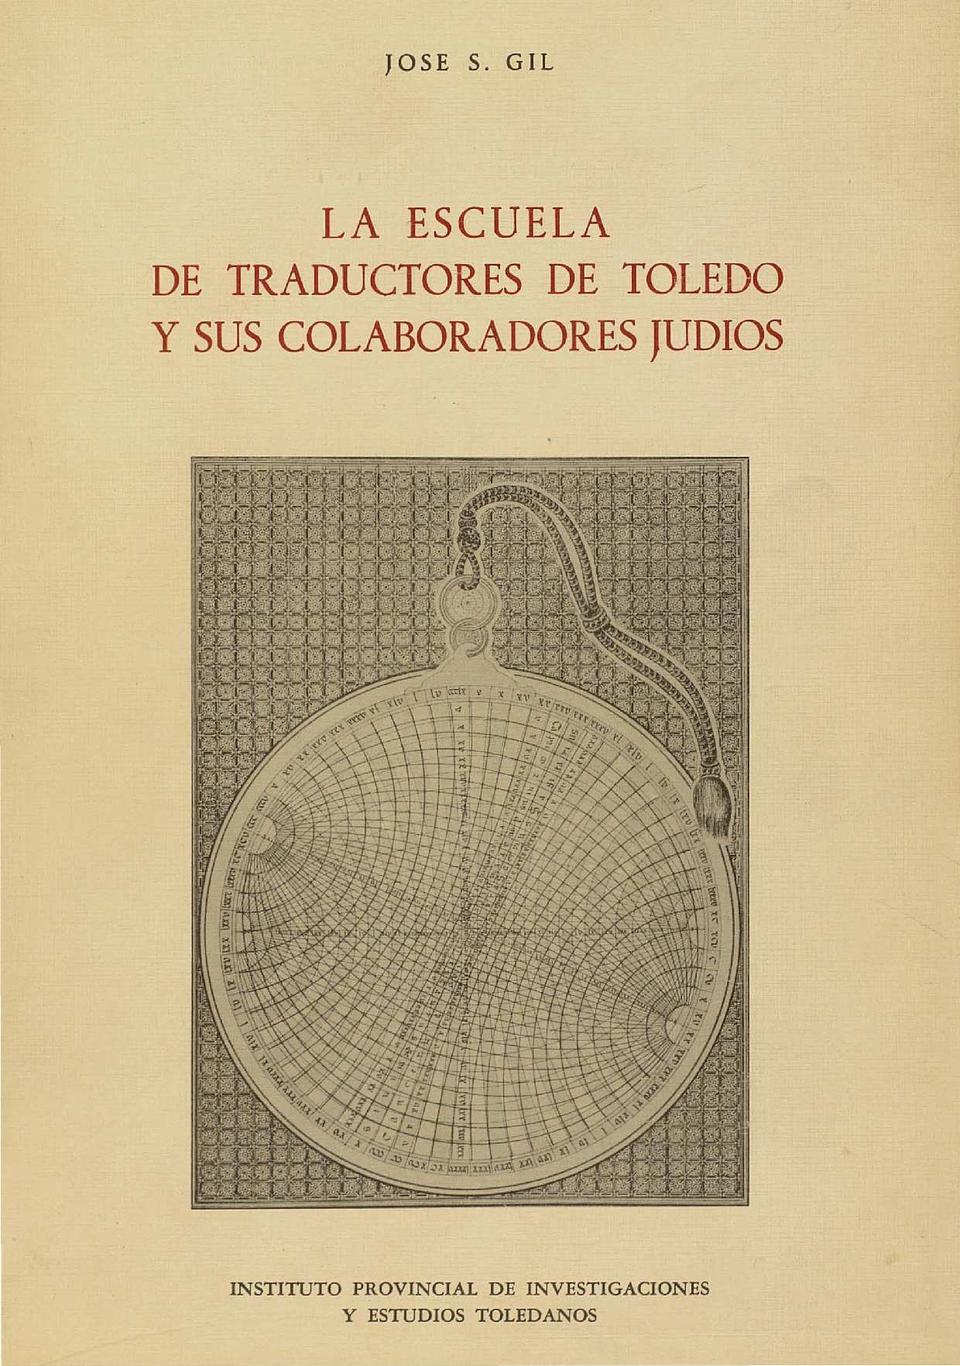 La Escuela de Traductores de Toledo y sus colaboradores judíos / José S. Gil.-. [Monografía]